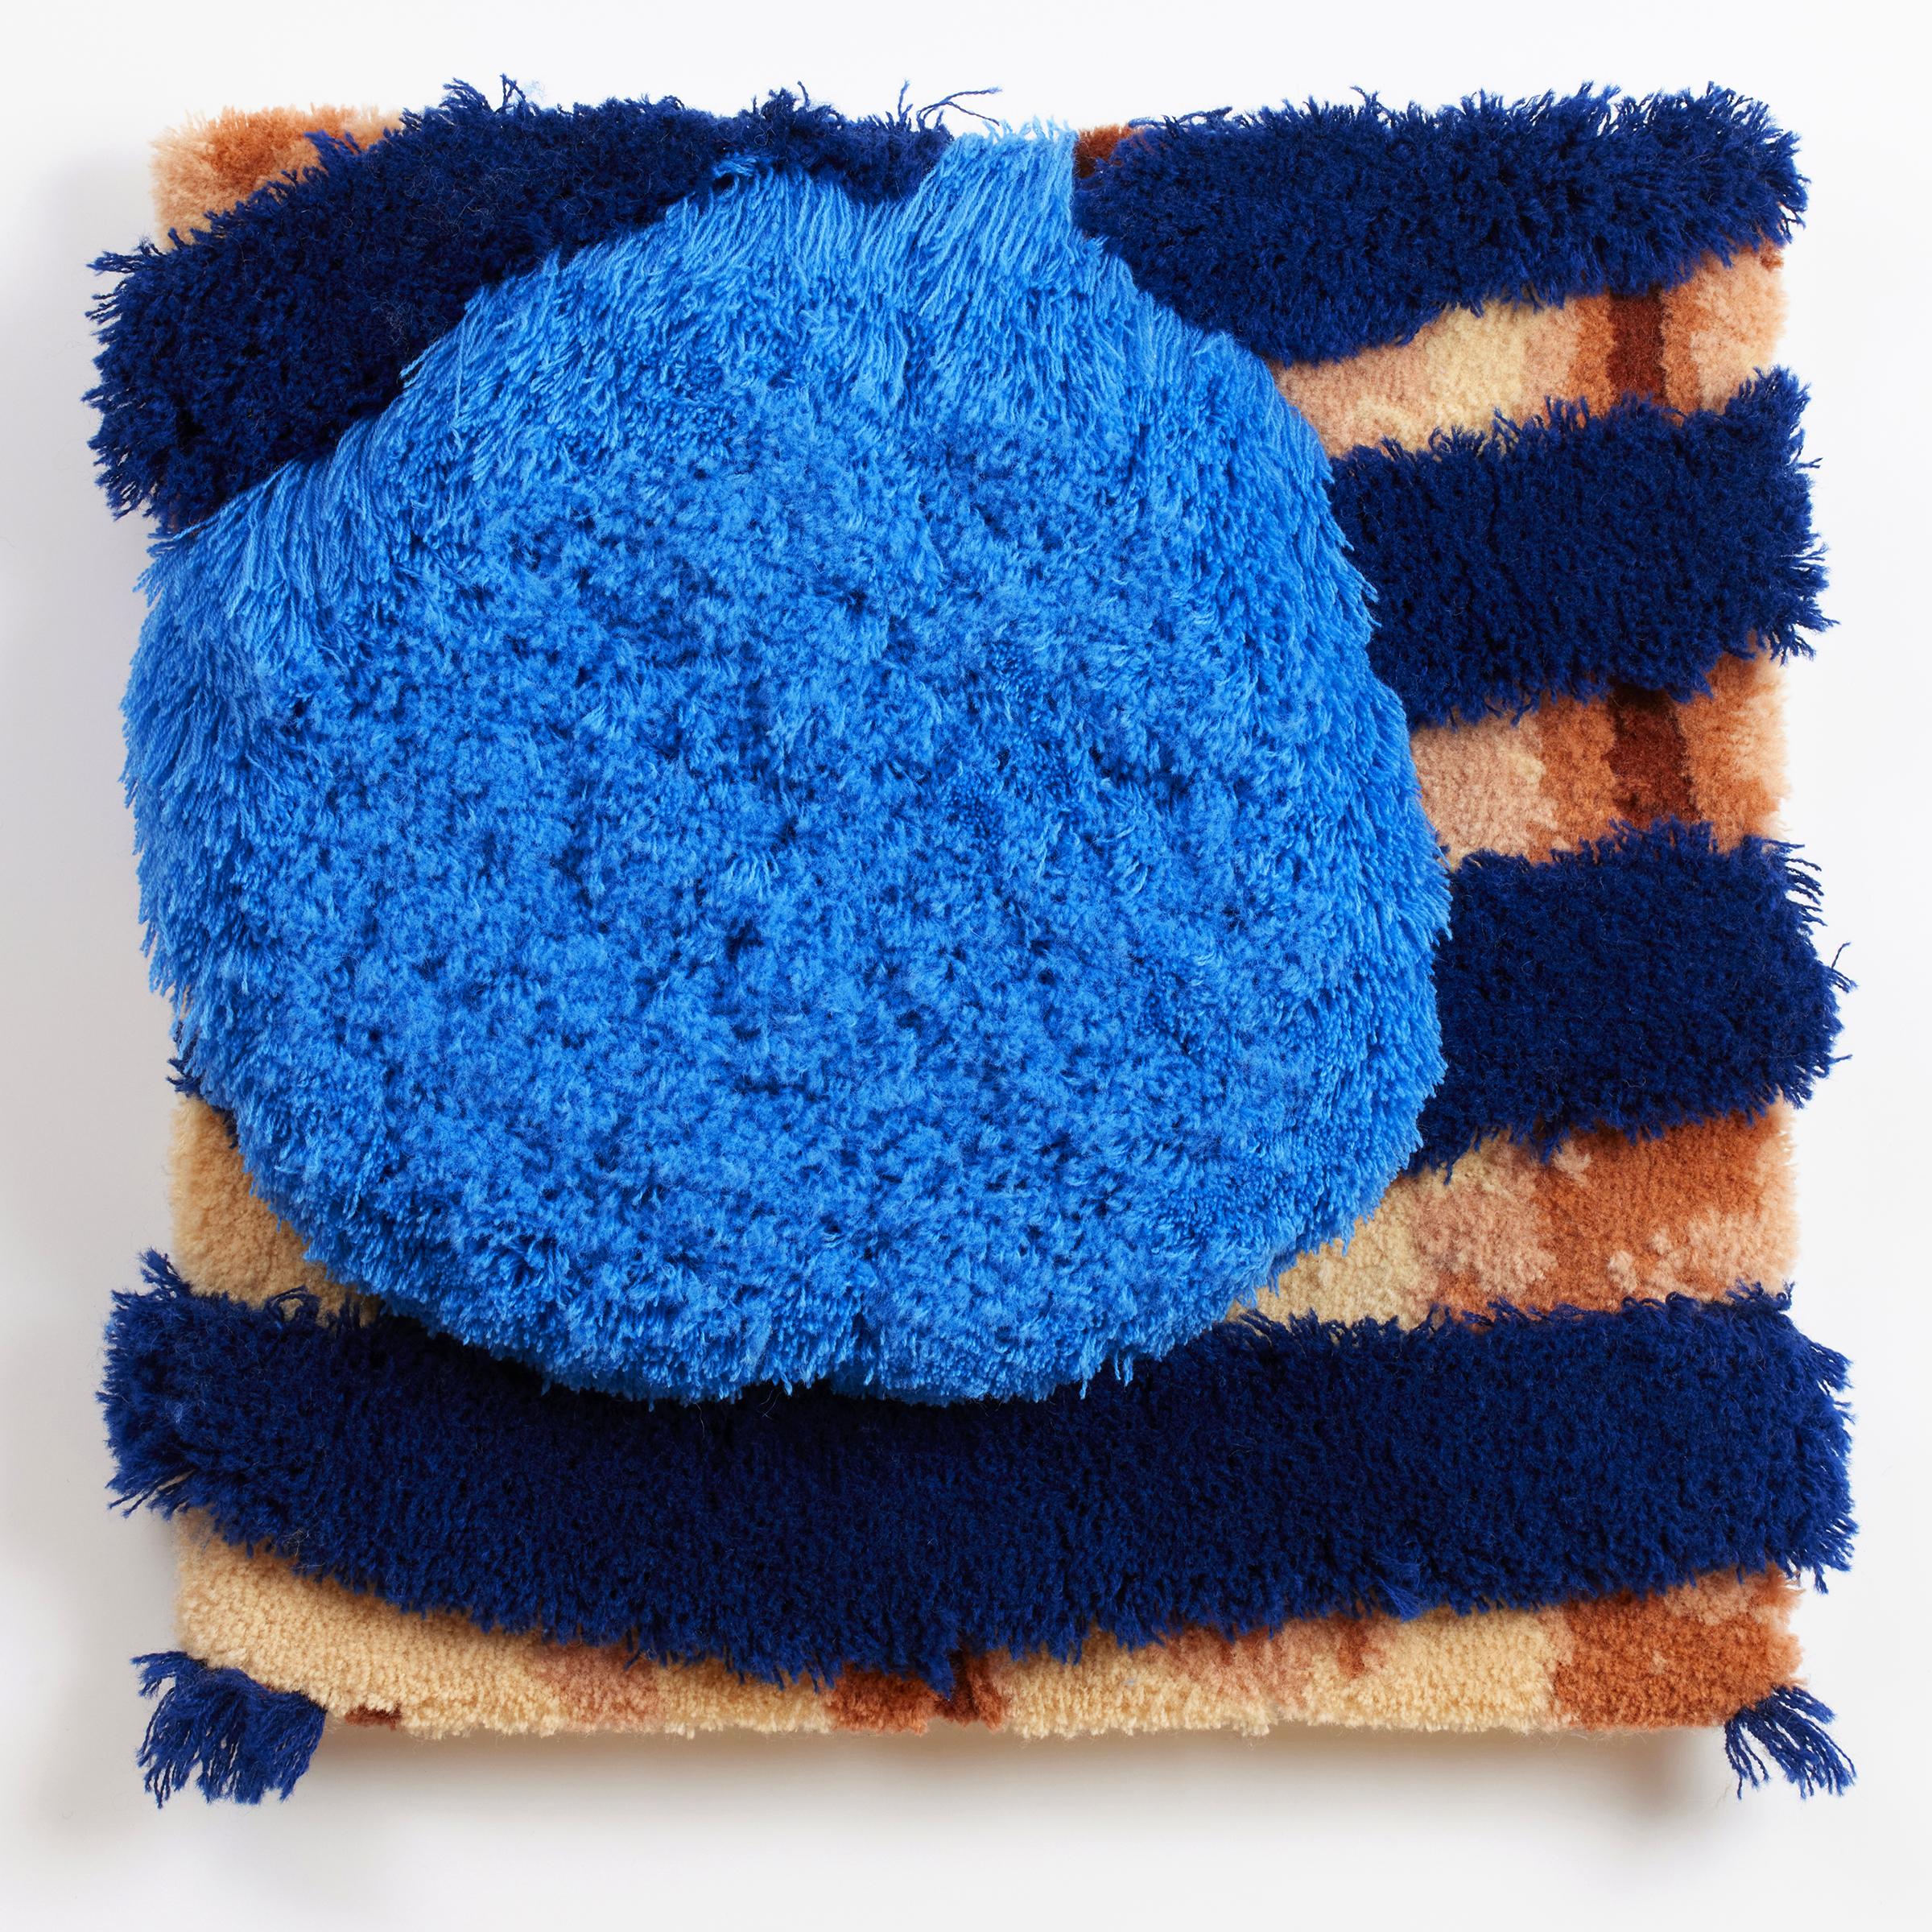 Trish Andersen Abstract Sculpture – Blue Boy" - zeitgenössische Faserkunst, Textur, Muster, Streifen, Tuft